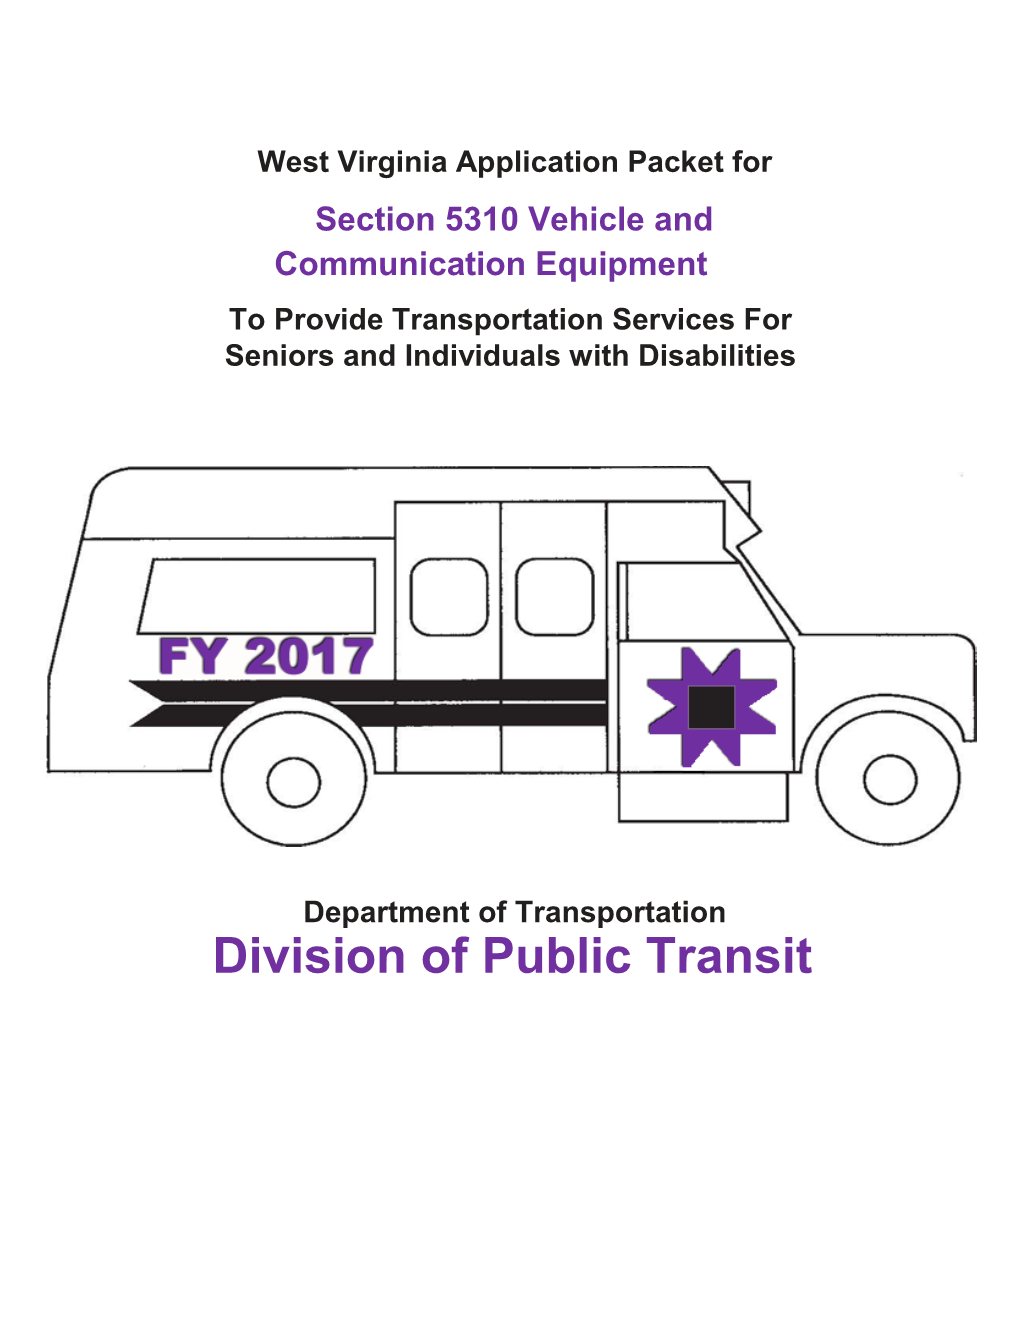 Division of Public Transit